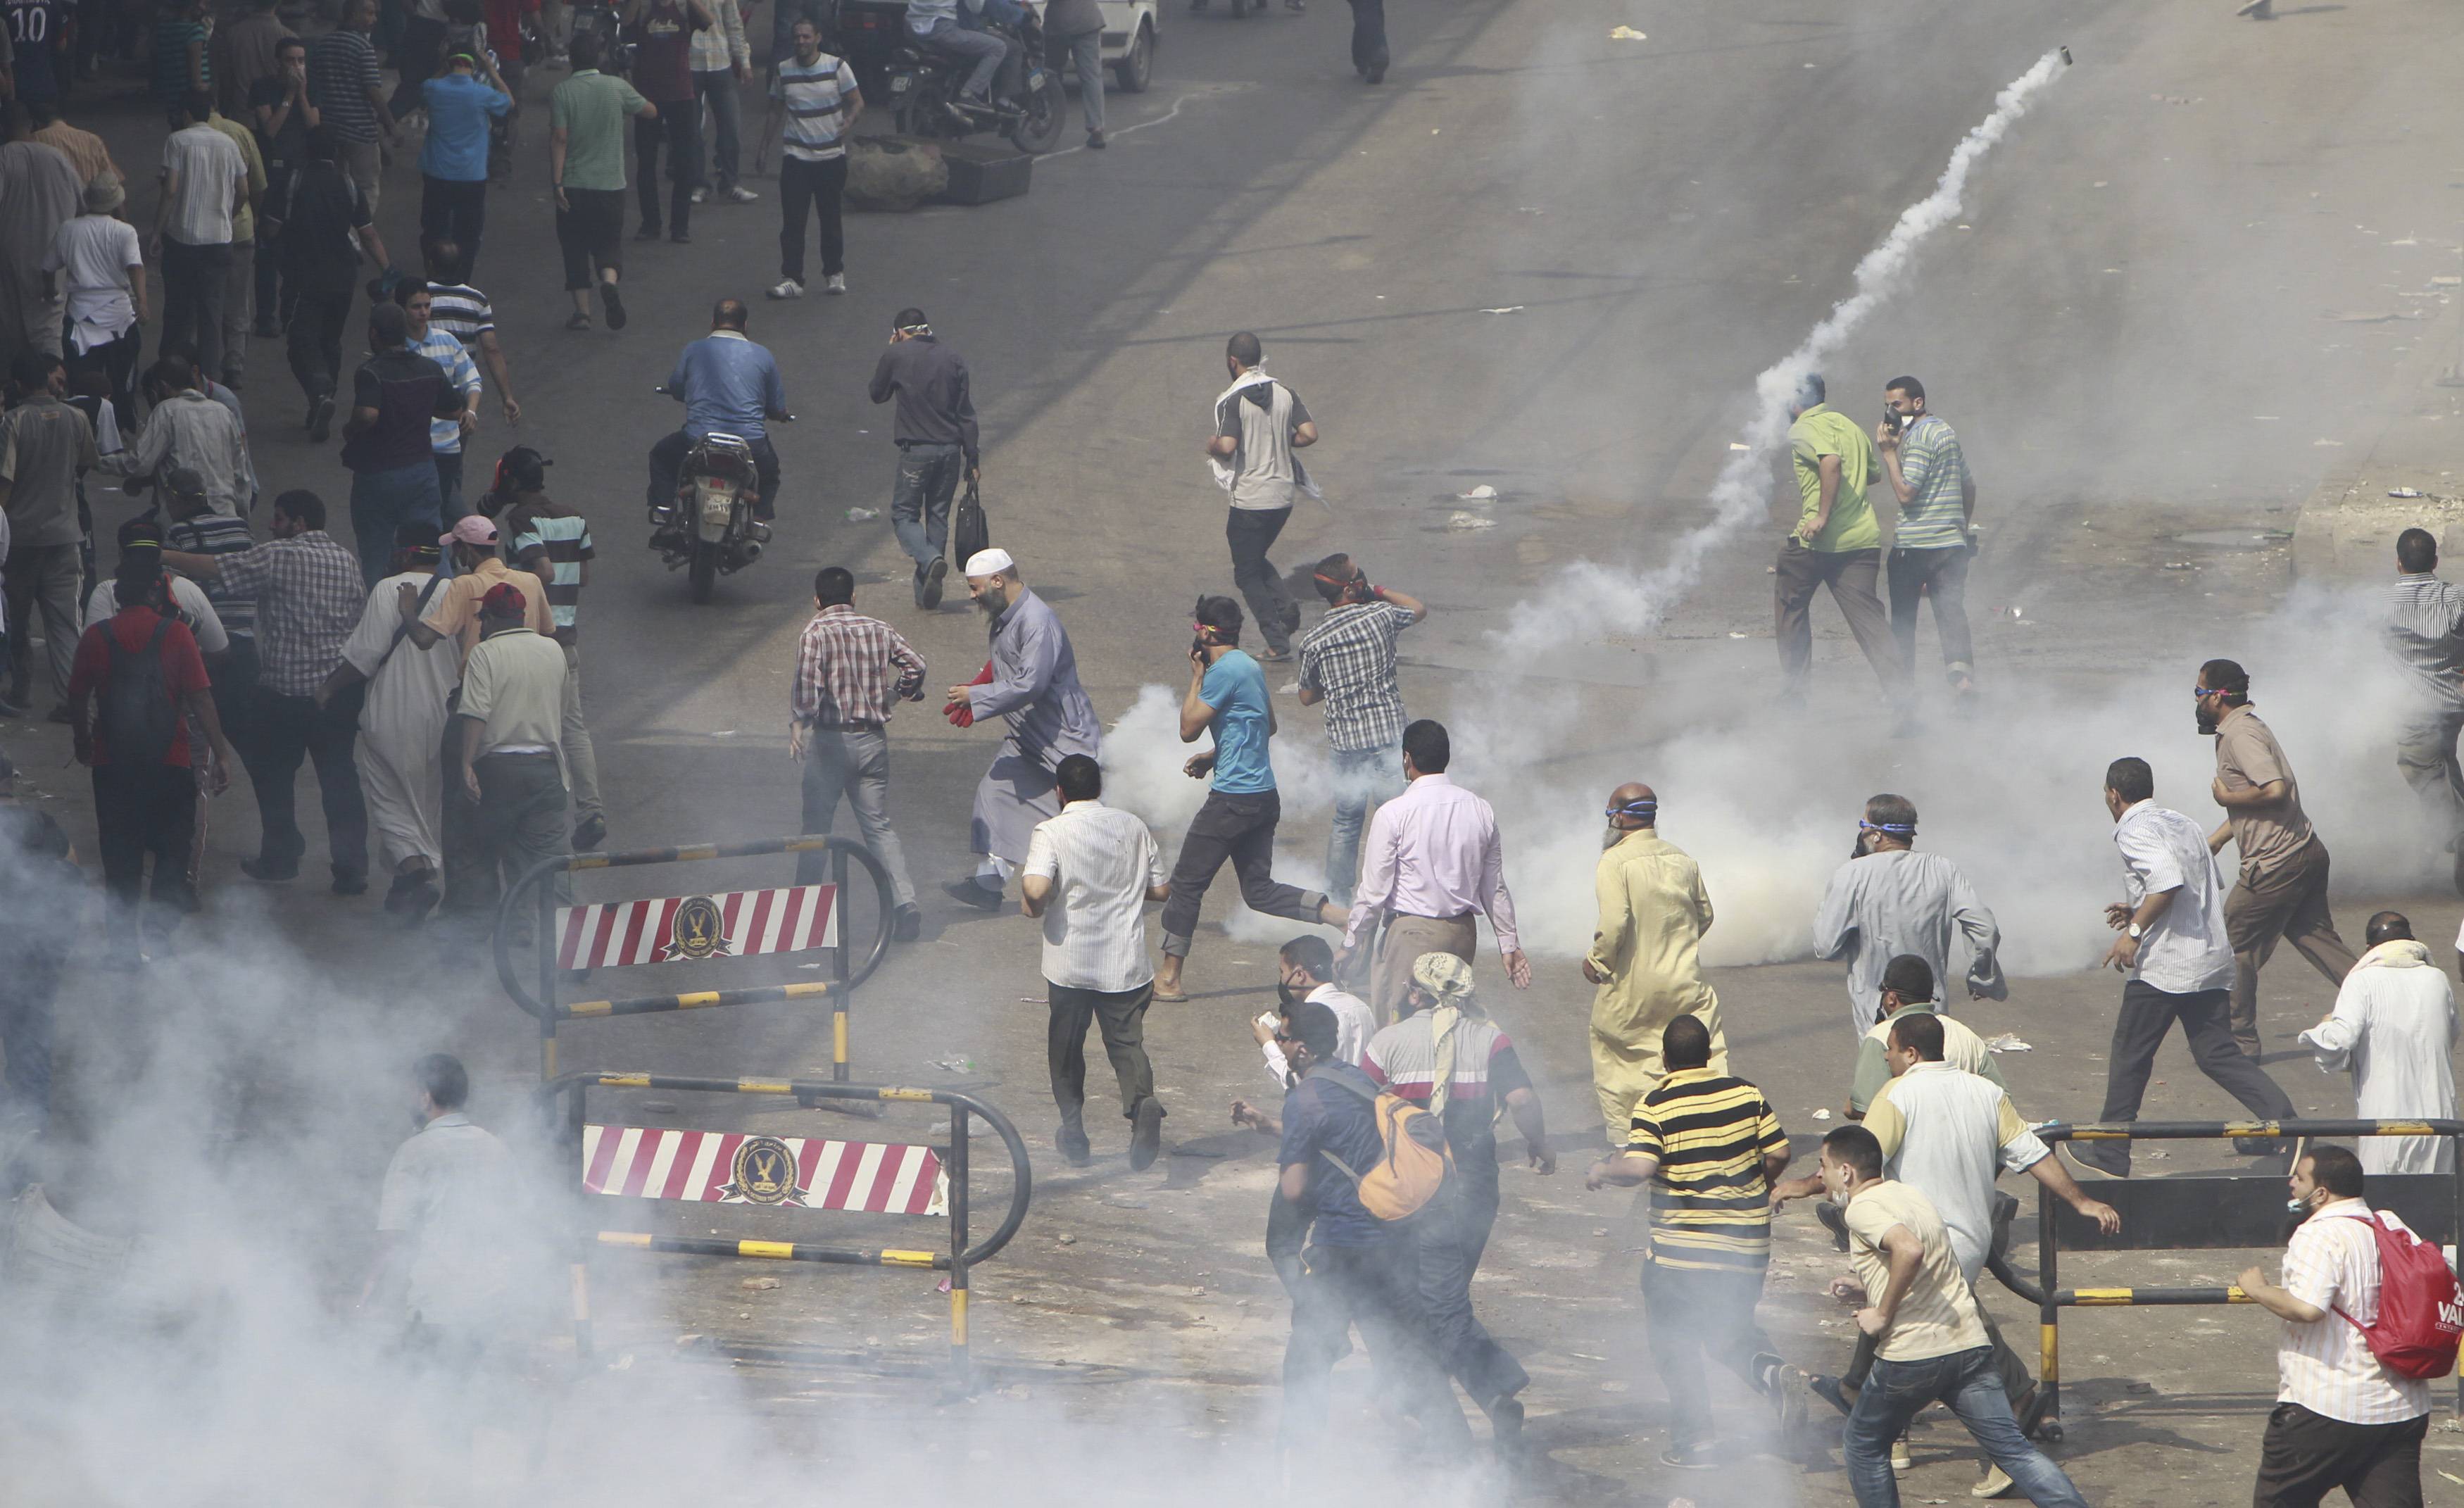 Χημικά και πετροπόλεμος στους δρόμους του Καΐρου - ΦΩΤΟΓΡΑΦΙΑ REUTERS